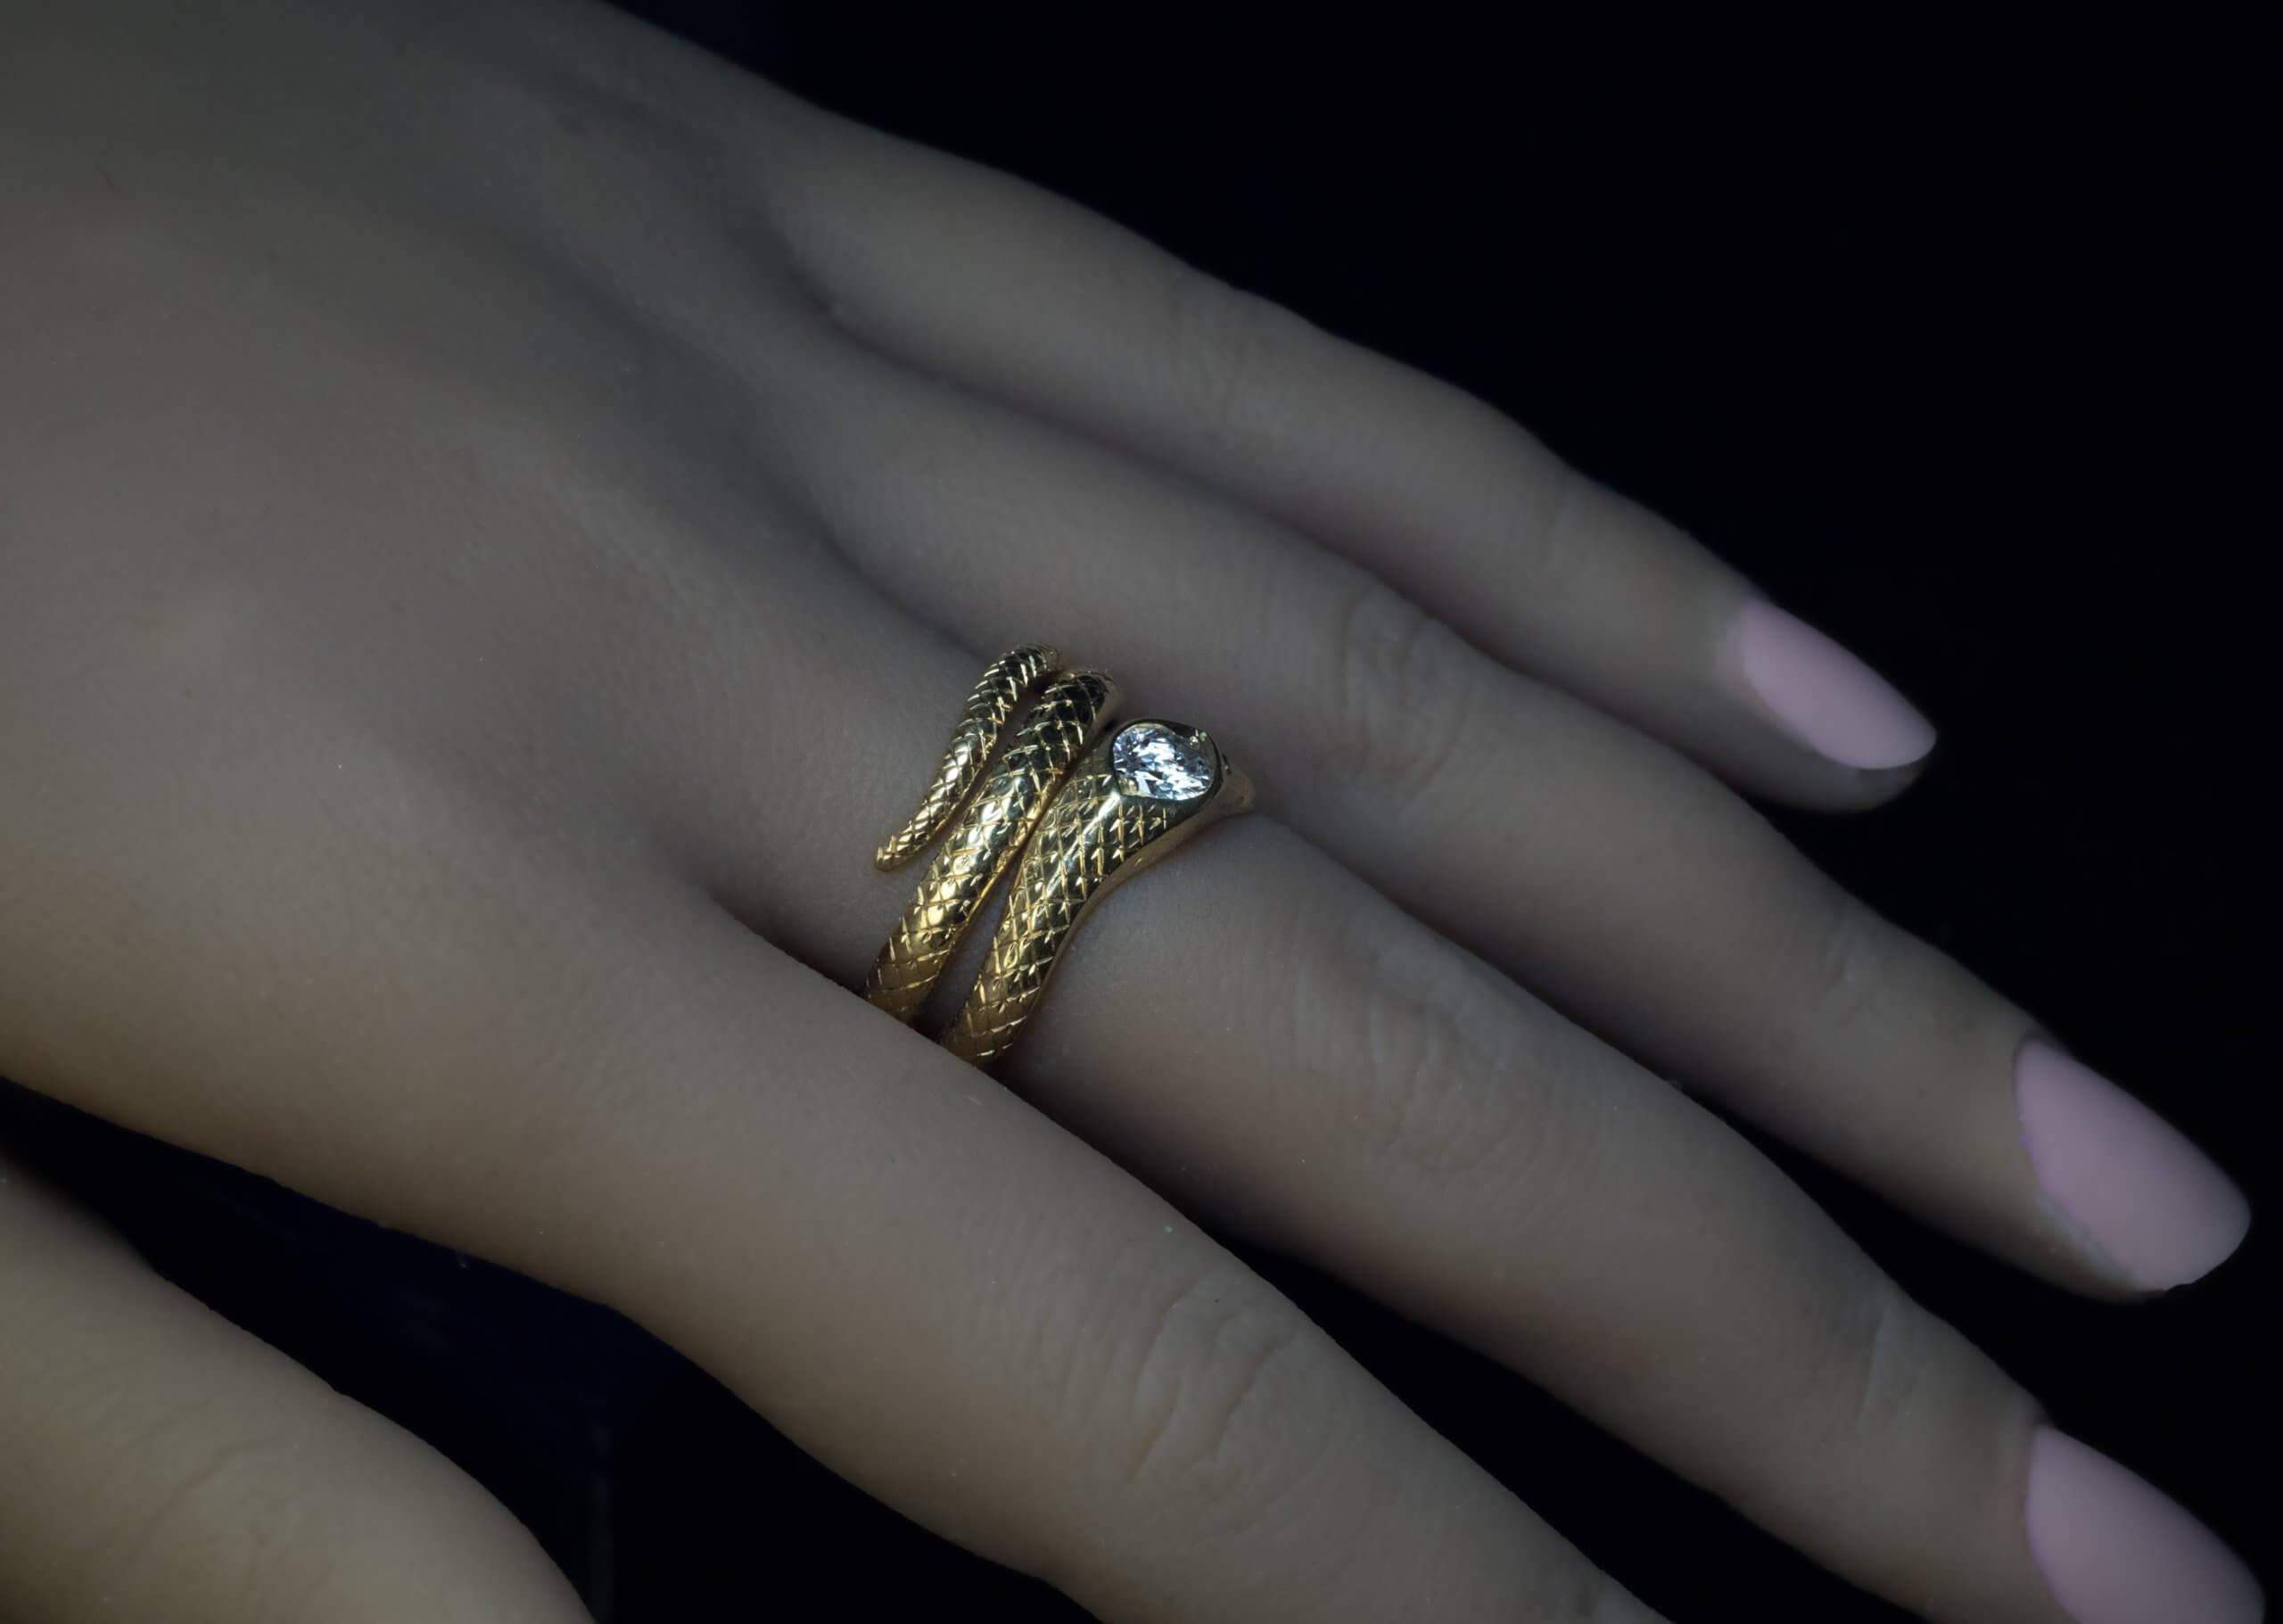 18k gold snake ring